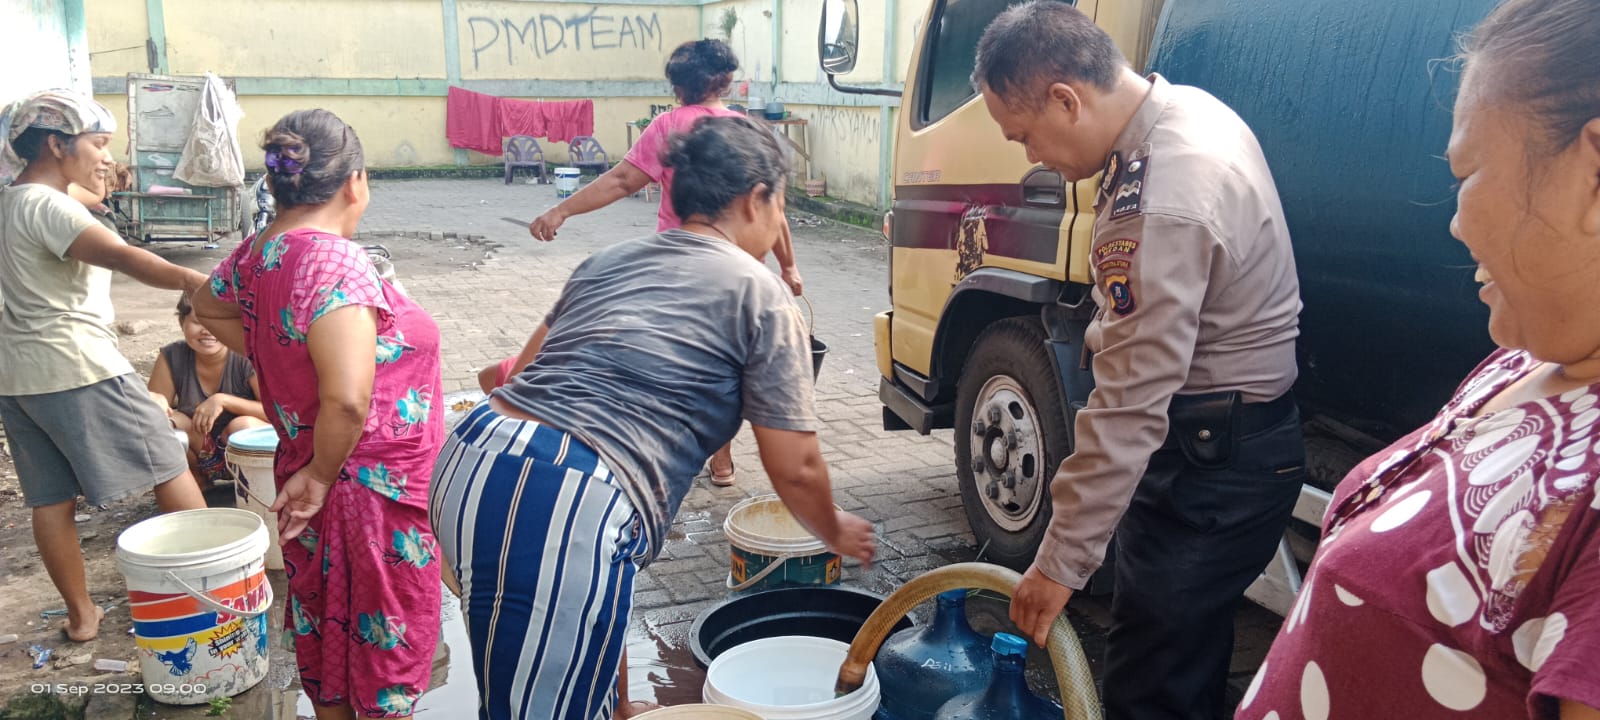 Polri Peduli Lingkungan, Kapolsek Patumbak Salurkan Bantuan Air Bersih dari Kapolrestabes Medan kepada Warga 2 Kecamatan